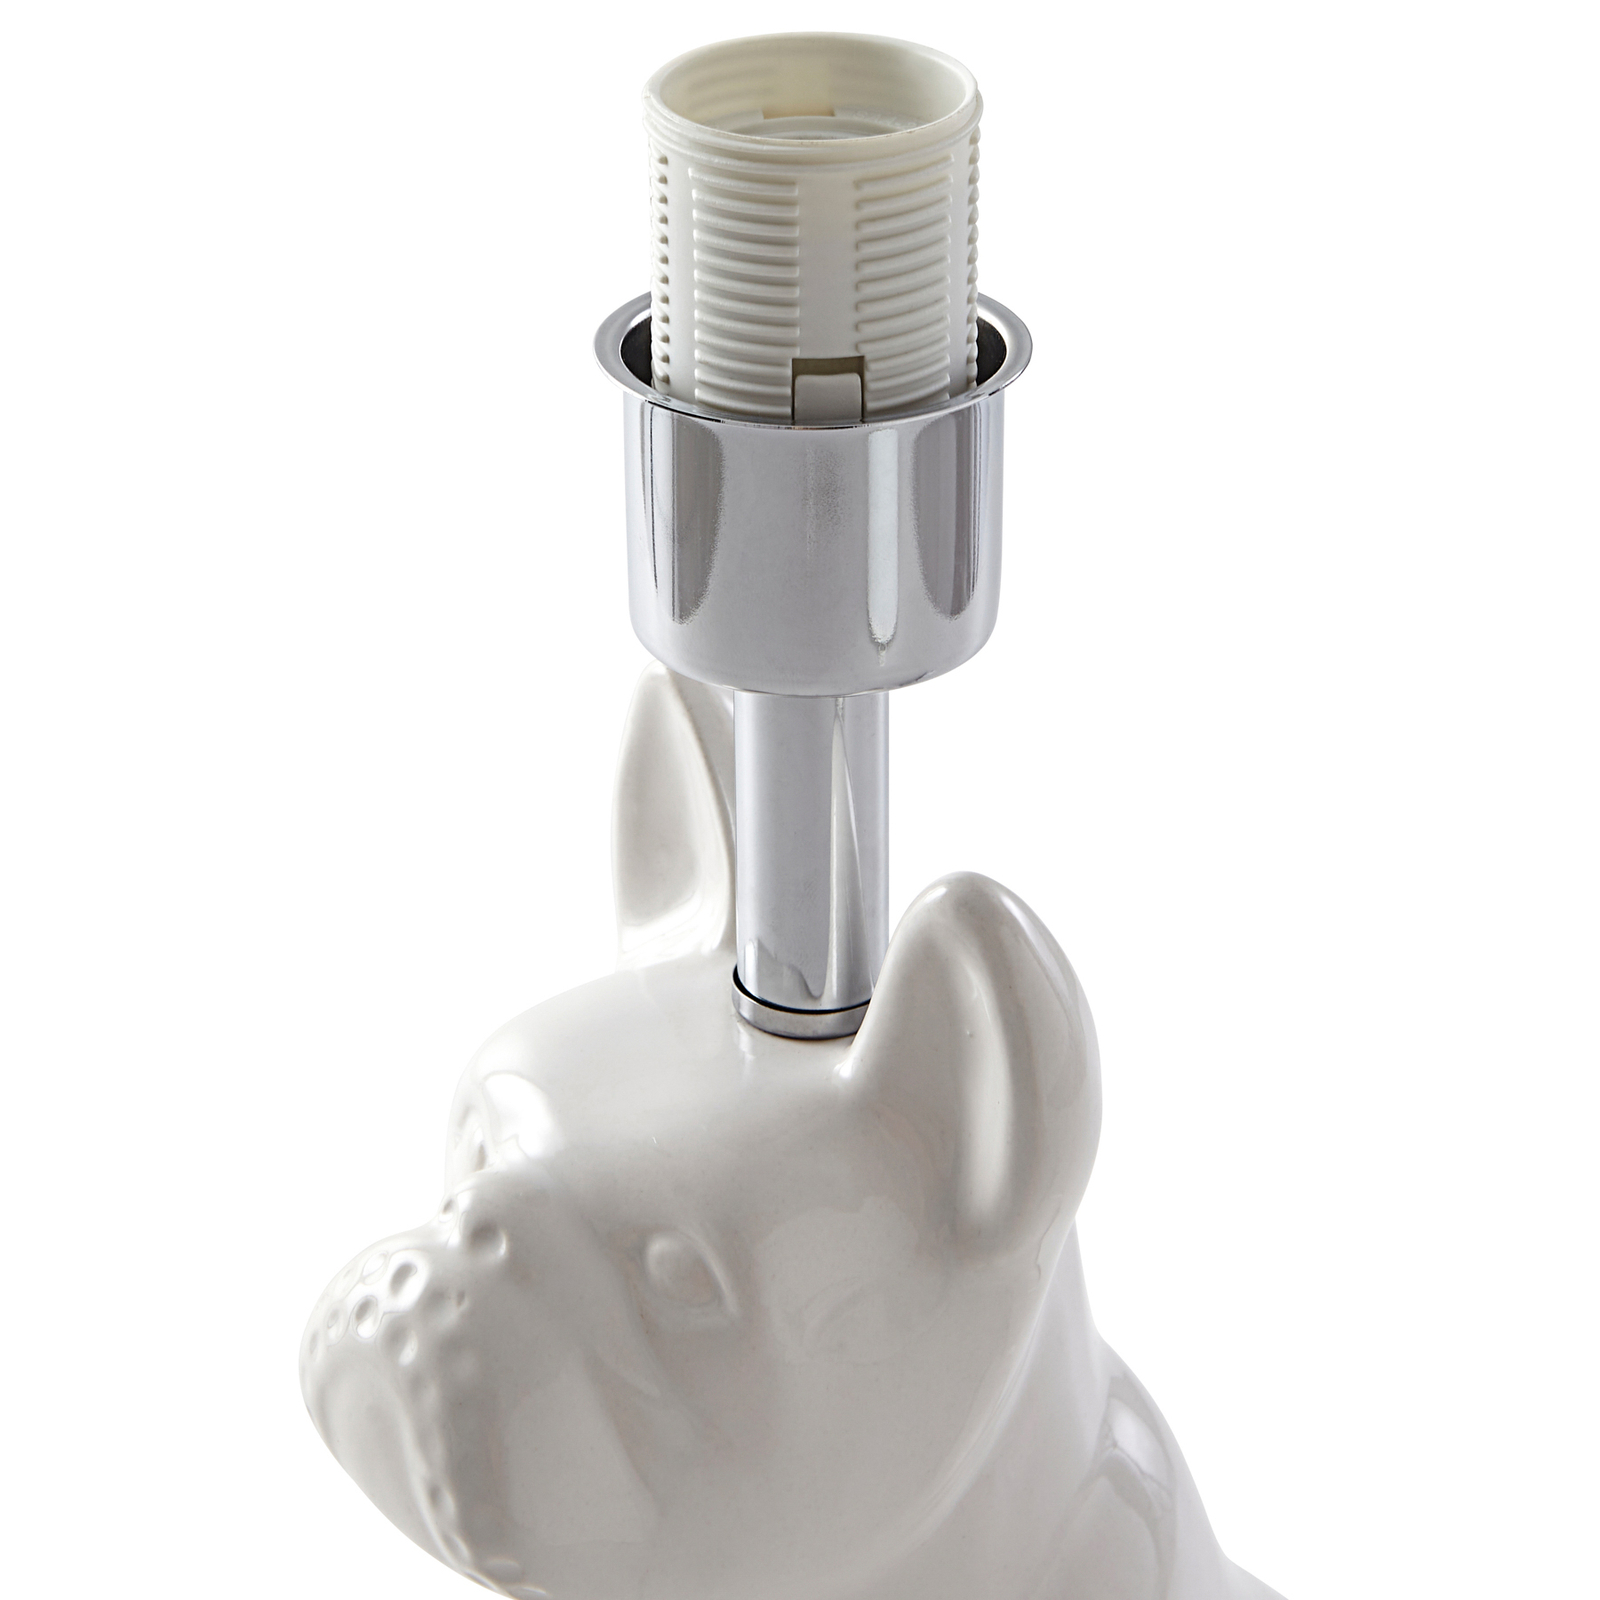 Lindby tafellamp Herry, wit, keramiek, hond, 46,5 cm hoog